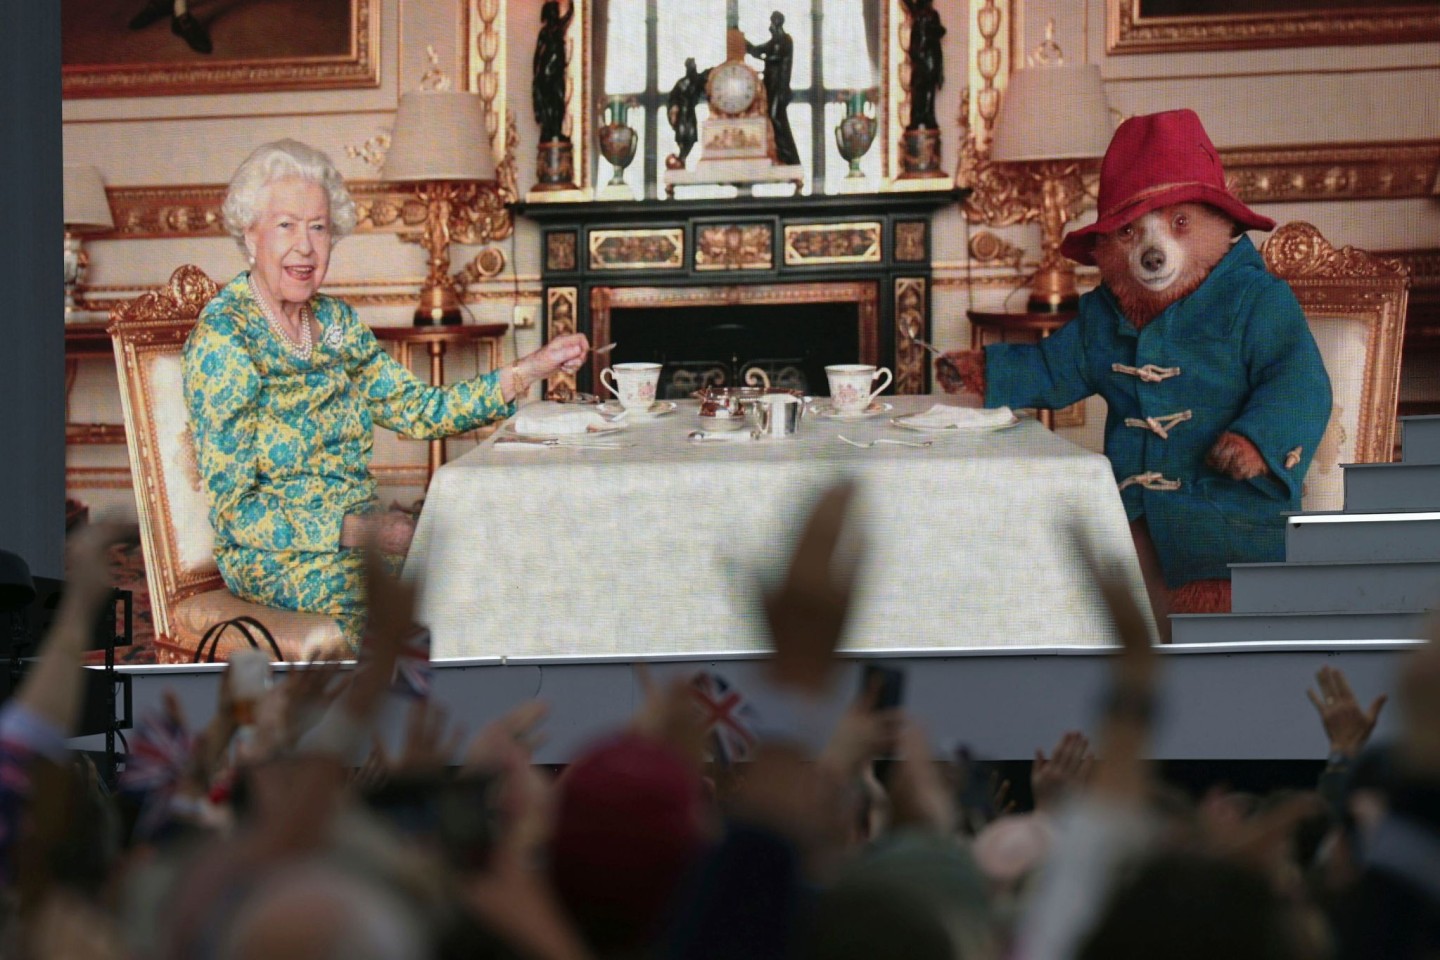 Die Zuschauer sehen auf einer großen Leinwand während der Platin-Party vor dem Buckingham-Palast Elizabeth II. beim Tee mit Paddington Bear.